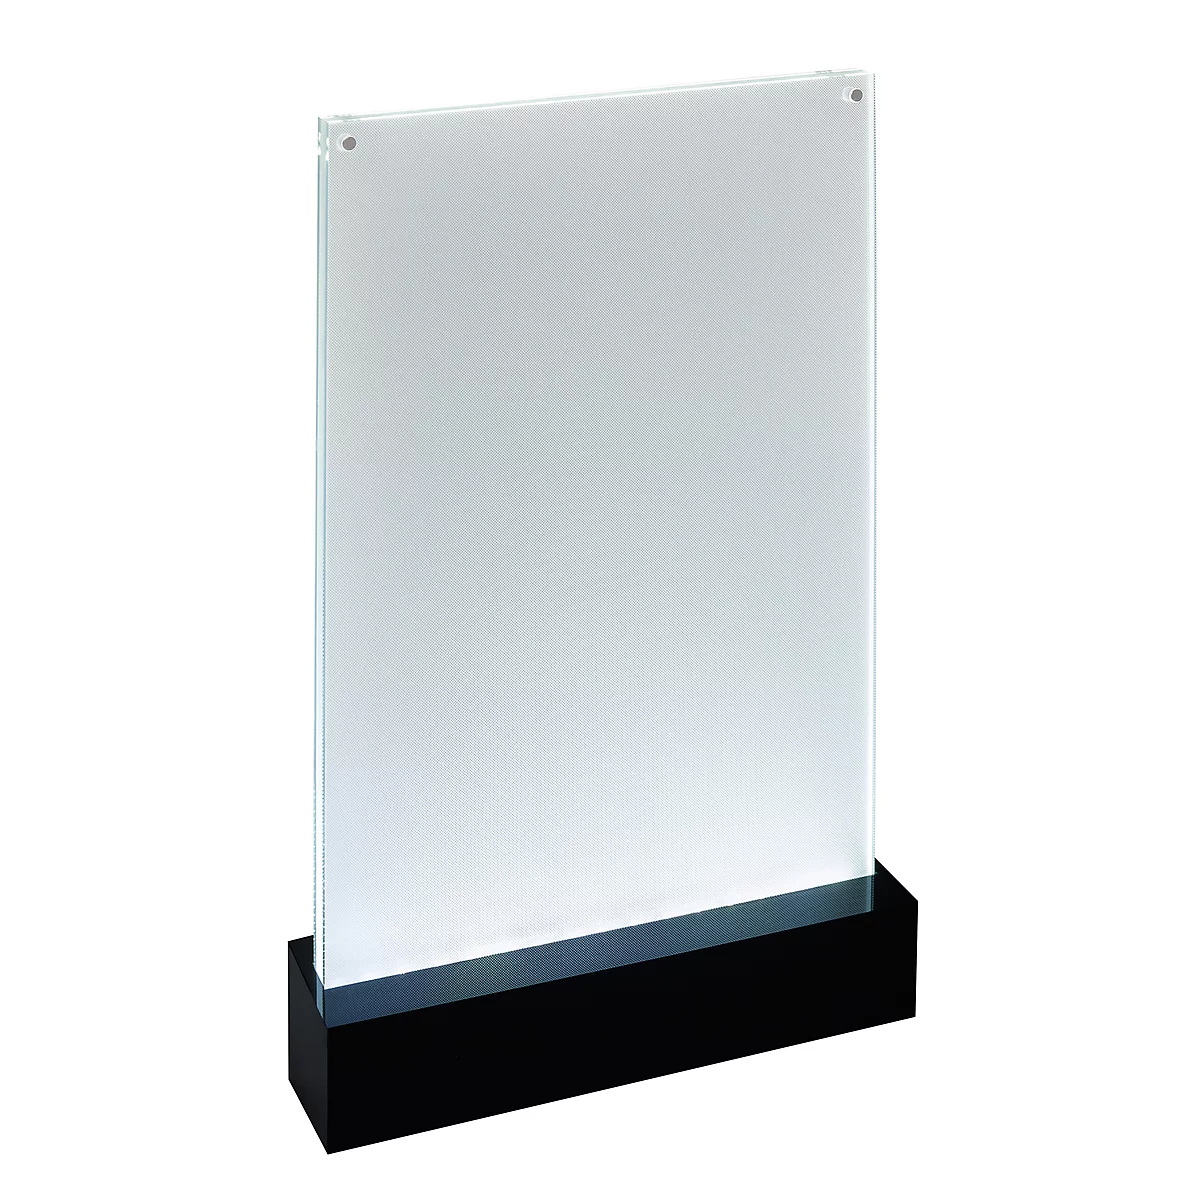 Portacarteles de mesa Premium A4: diseño elegante, dimensiones 221 x 341 x 46 mm